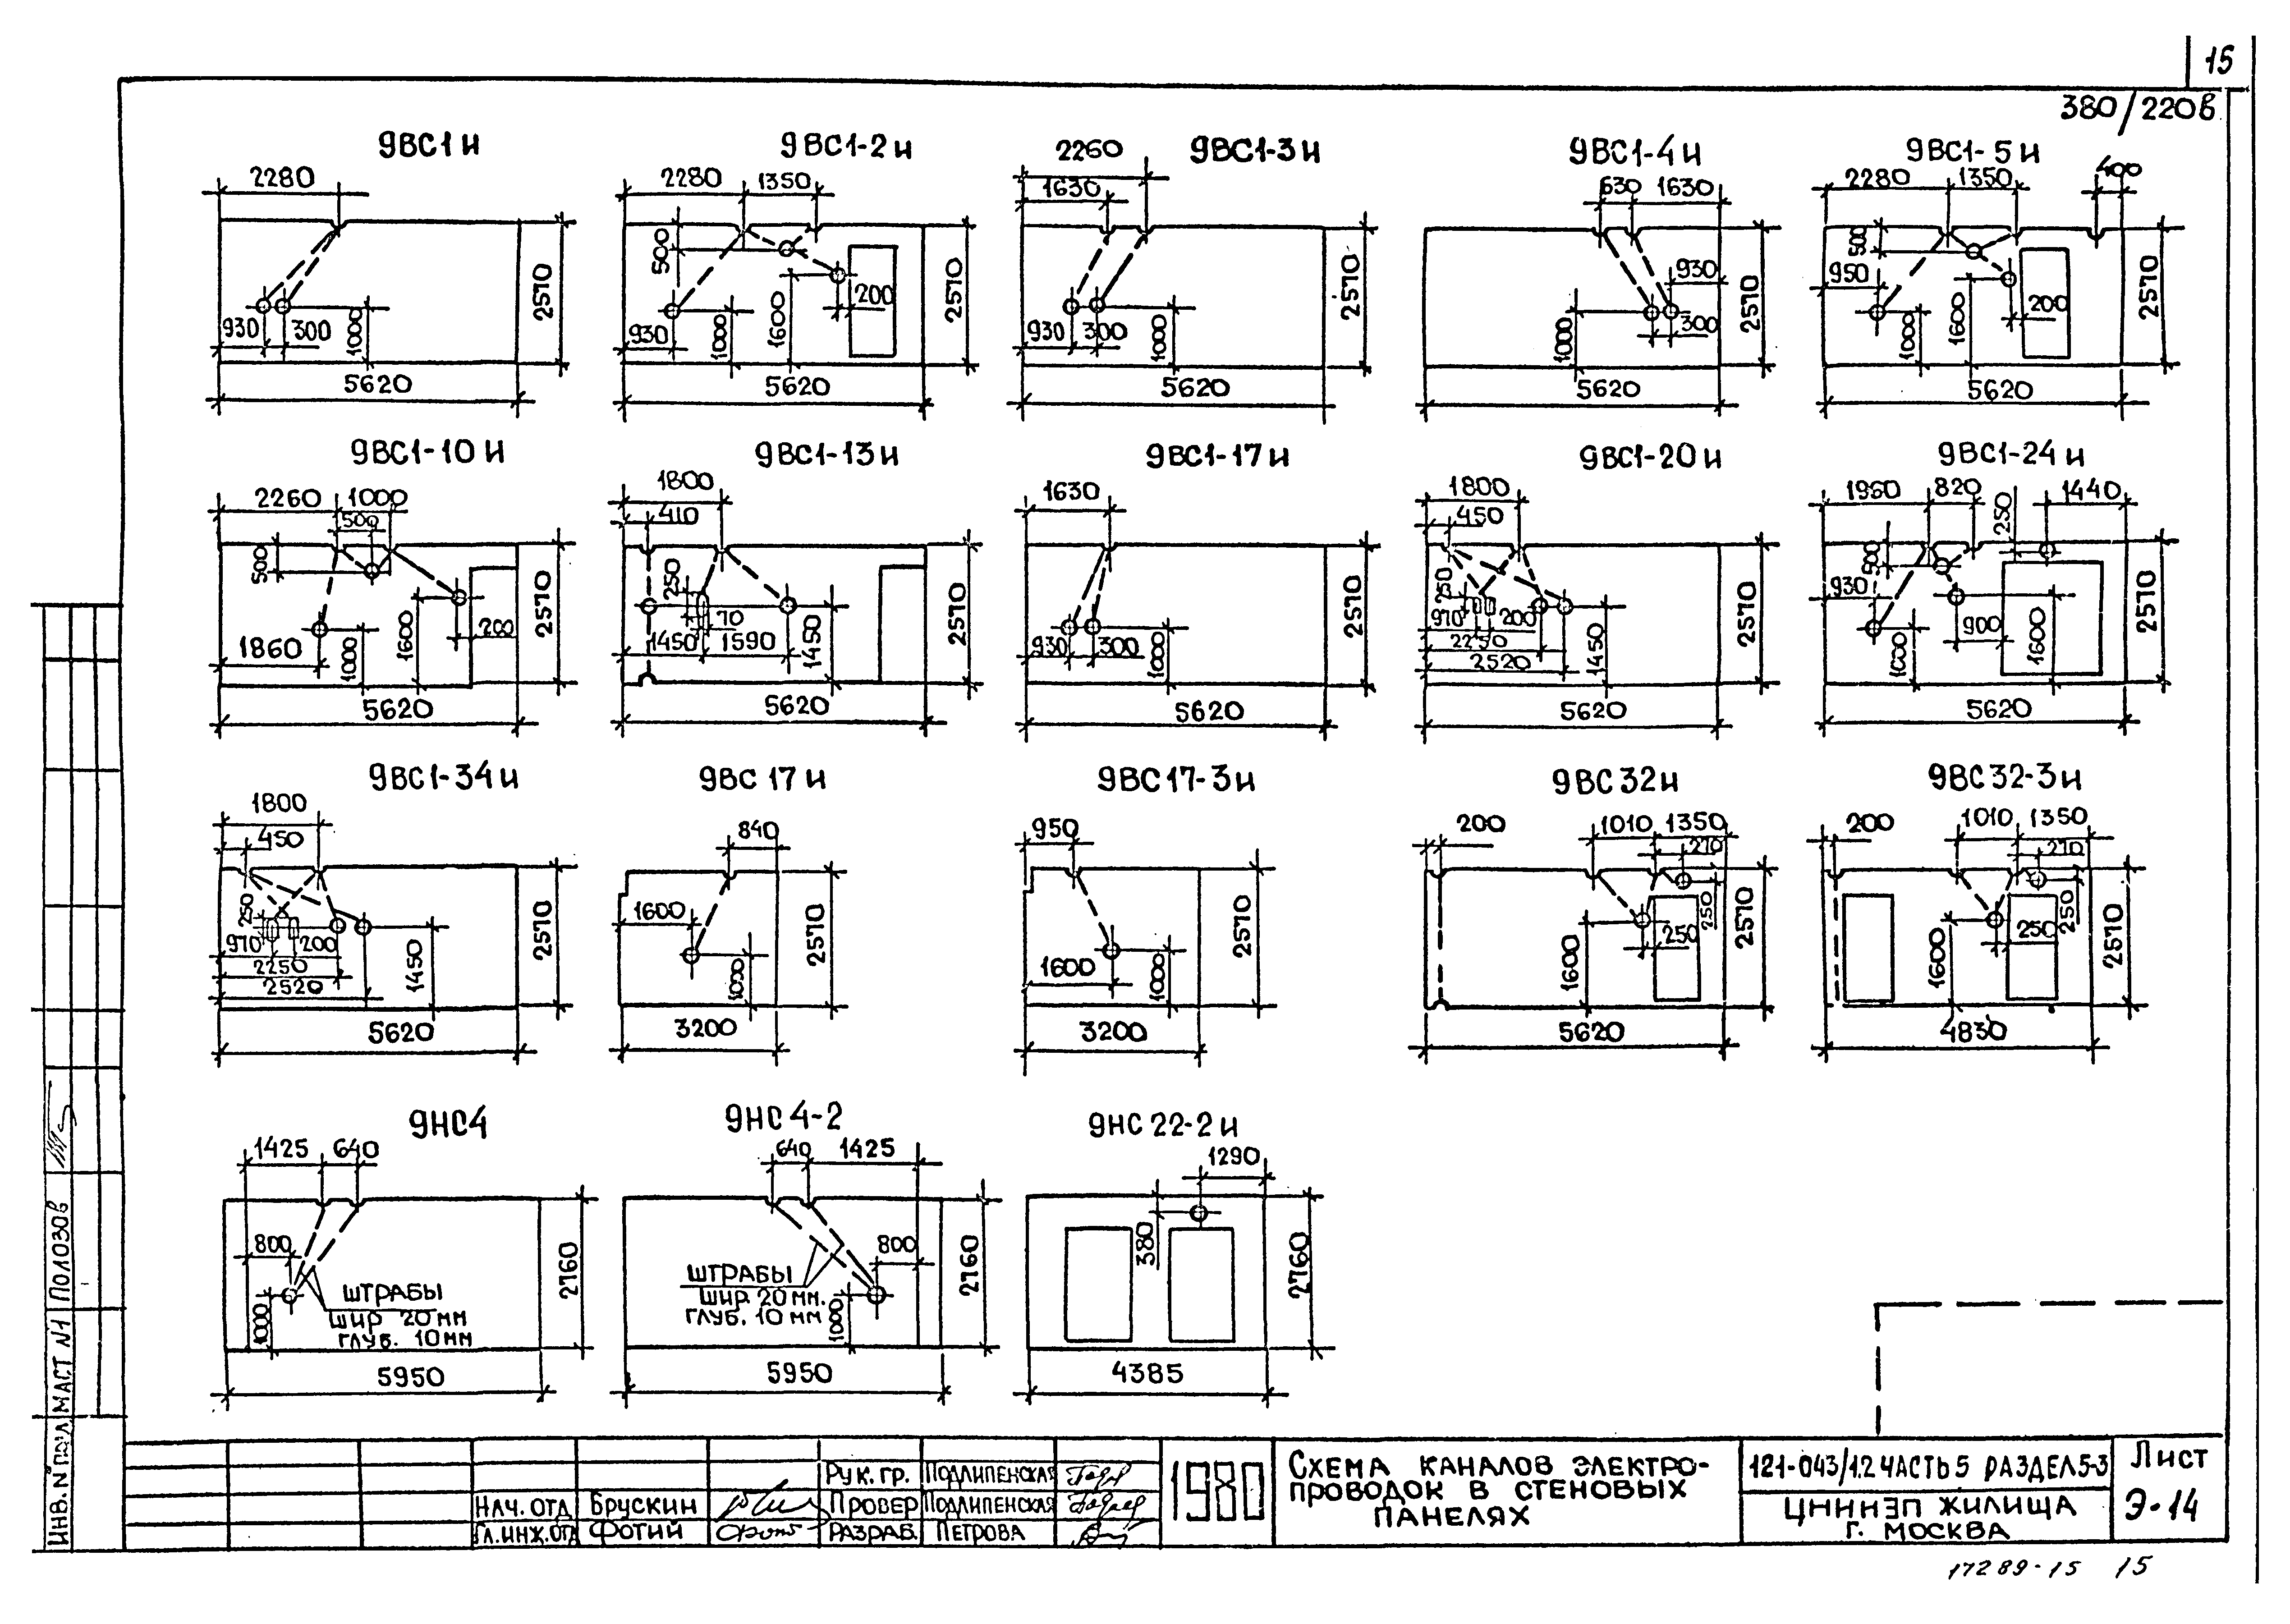 Схема проводки в панельной пятиэтажке